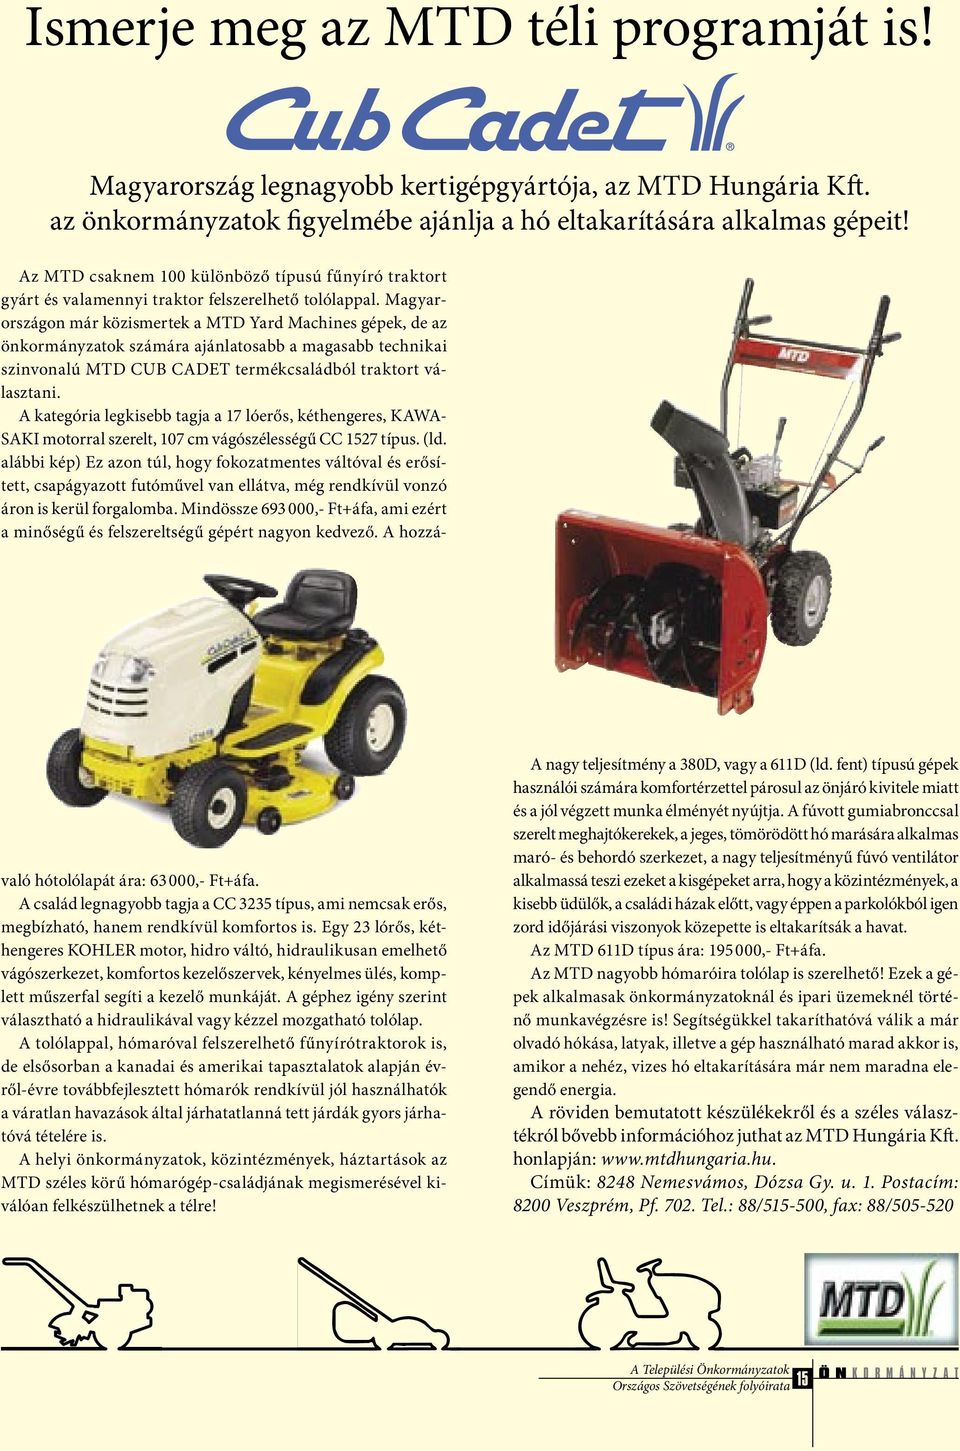 Magyarországon már közismertek a MTD Yard Machines gépek, de az önkormányzatok számára ajánlatosabb a magasabb technikai szinvonalú MTD CUB CADET termékcsaládból traktort választani.